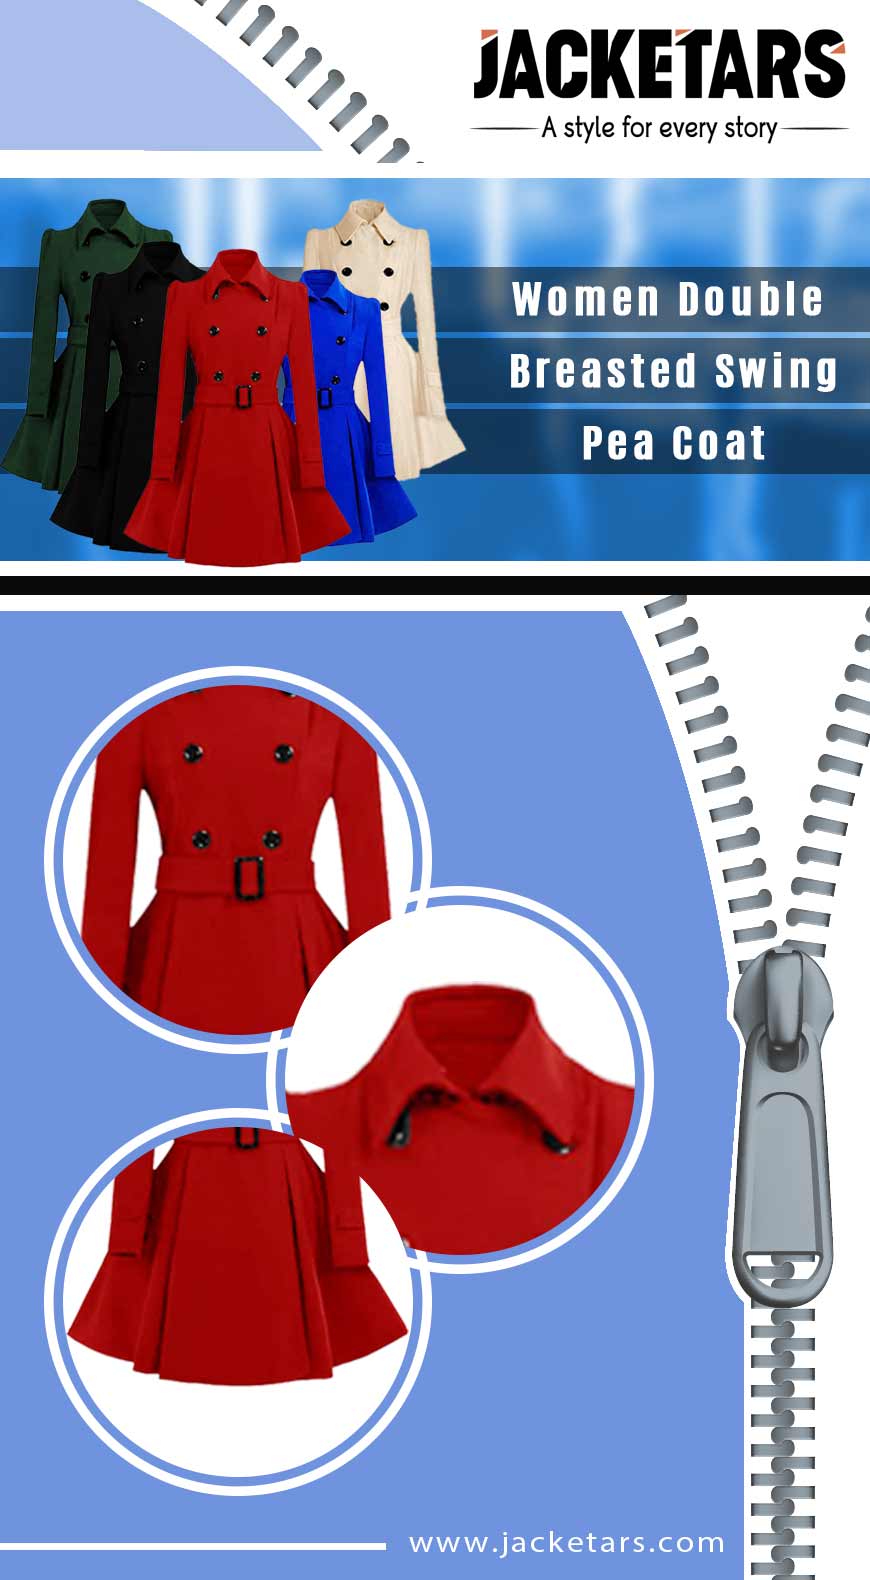 Women Double Breasted Swing Pea Coat Info